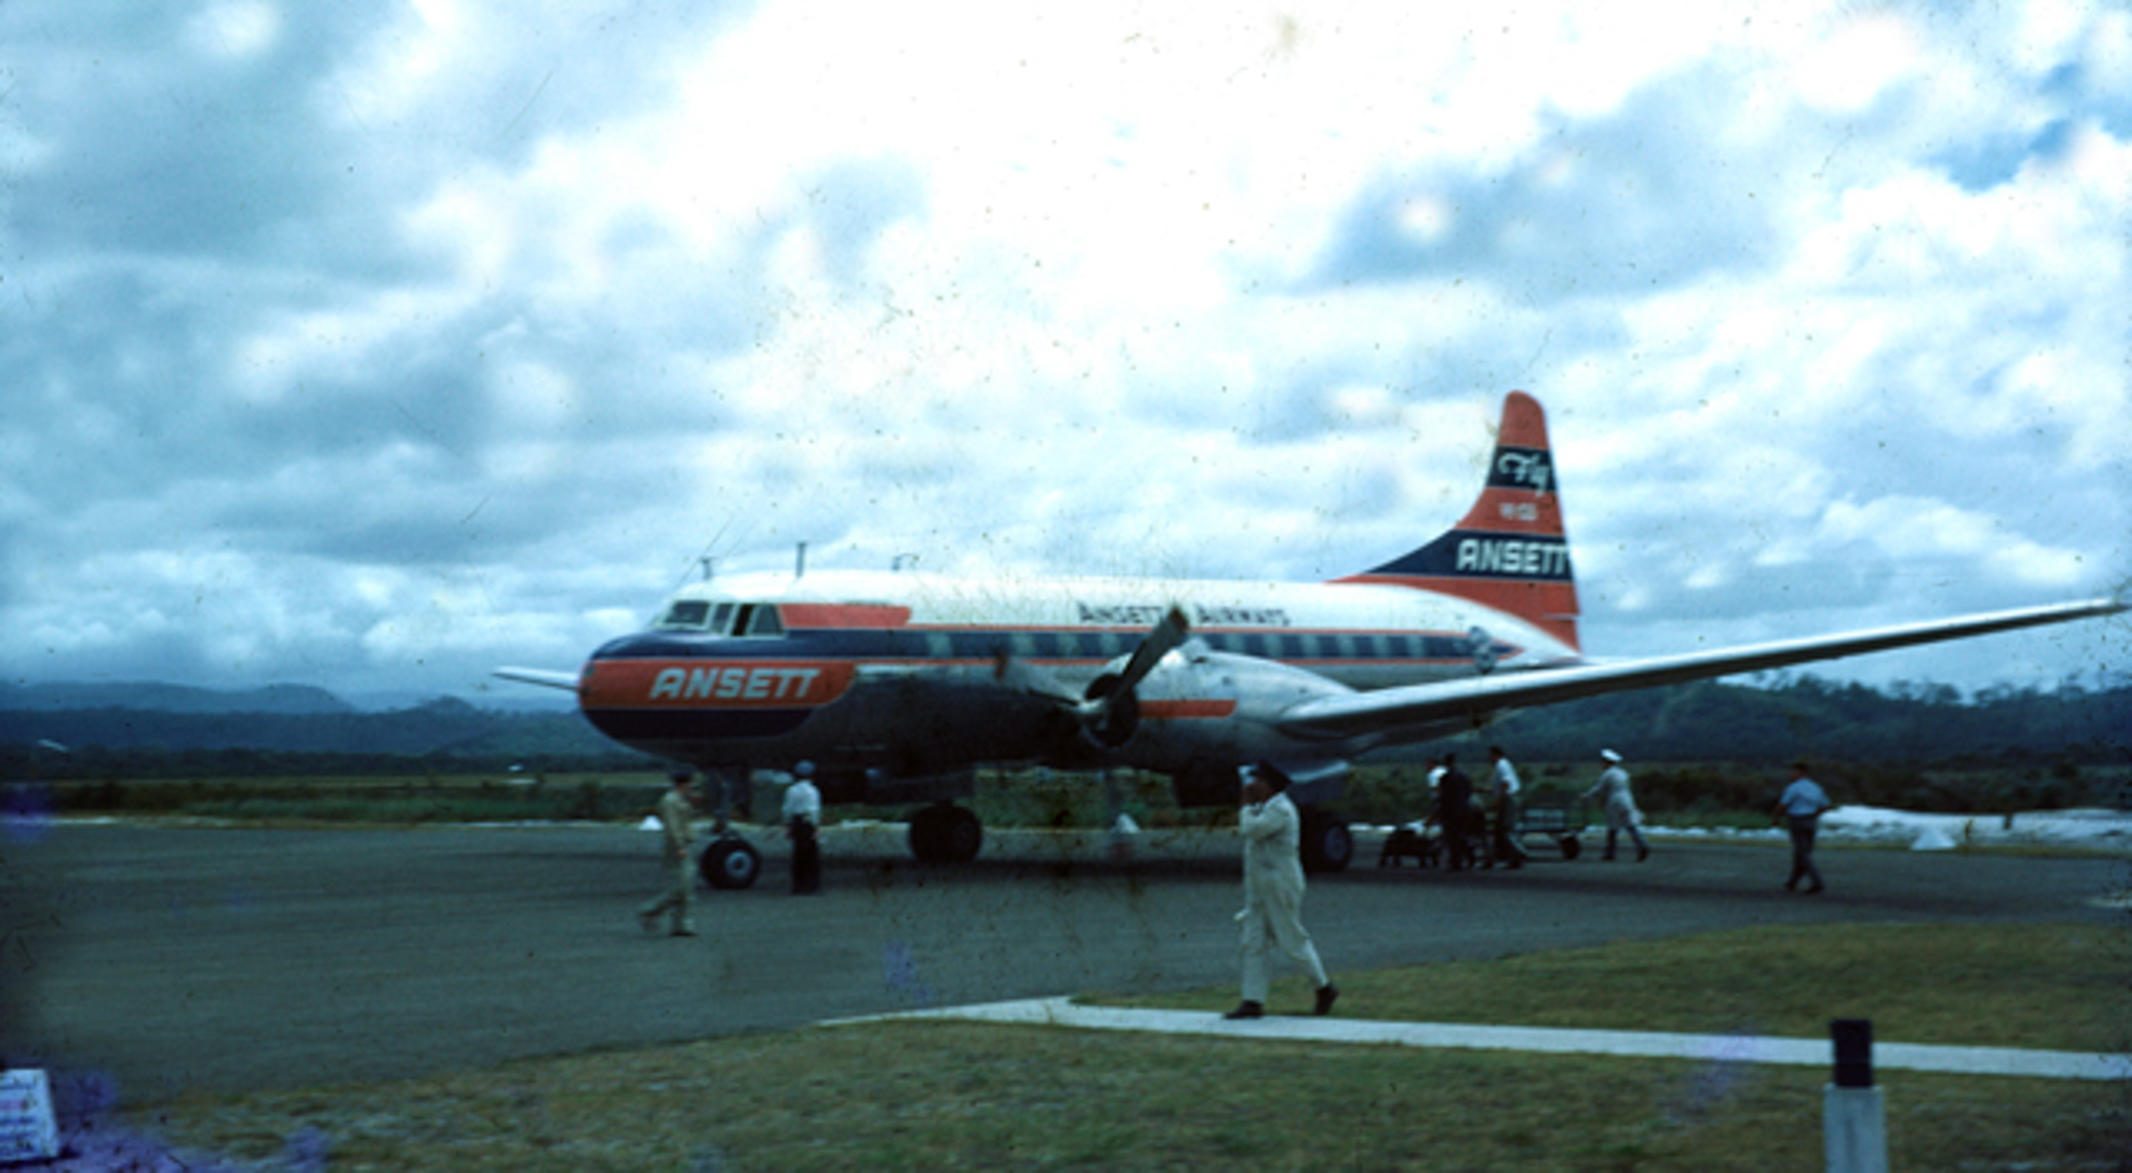 An Ansett Airways jet at Coolangatta airport in Queensland. Hogan began his career at Ansett